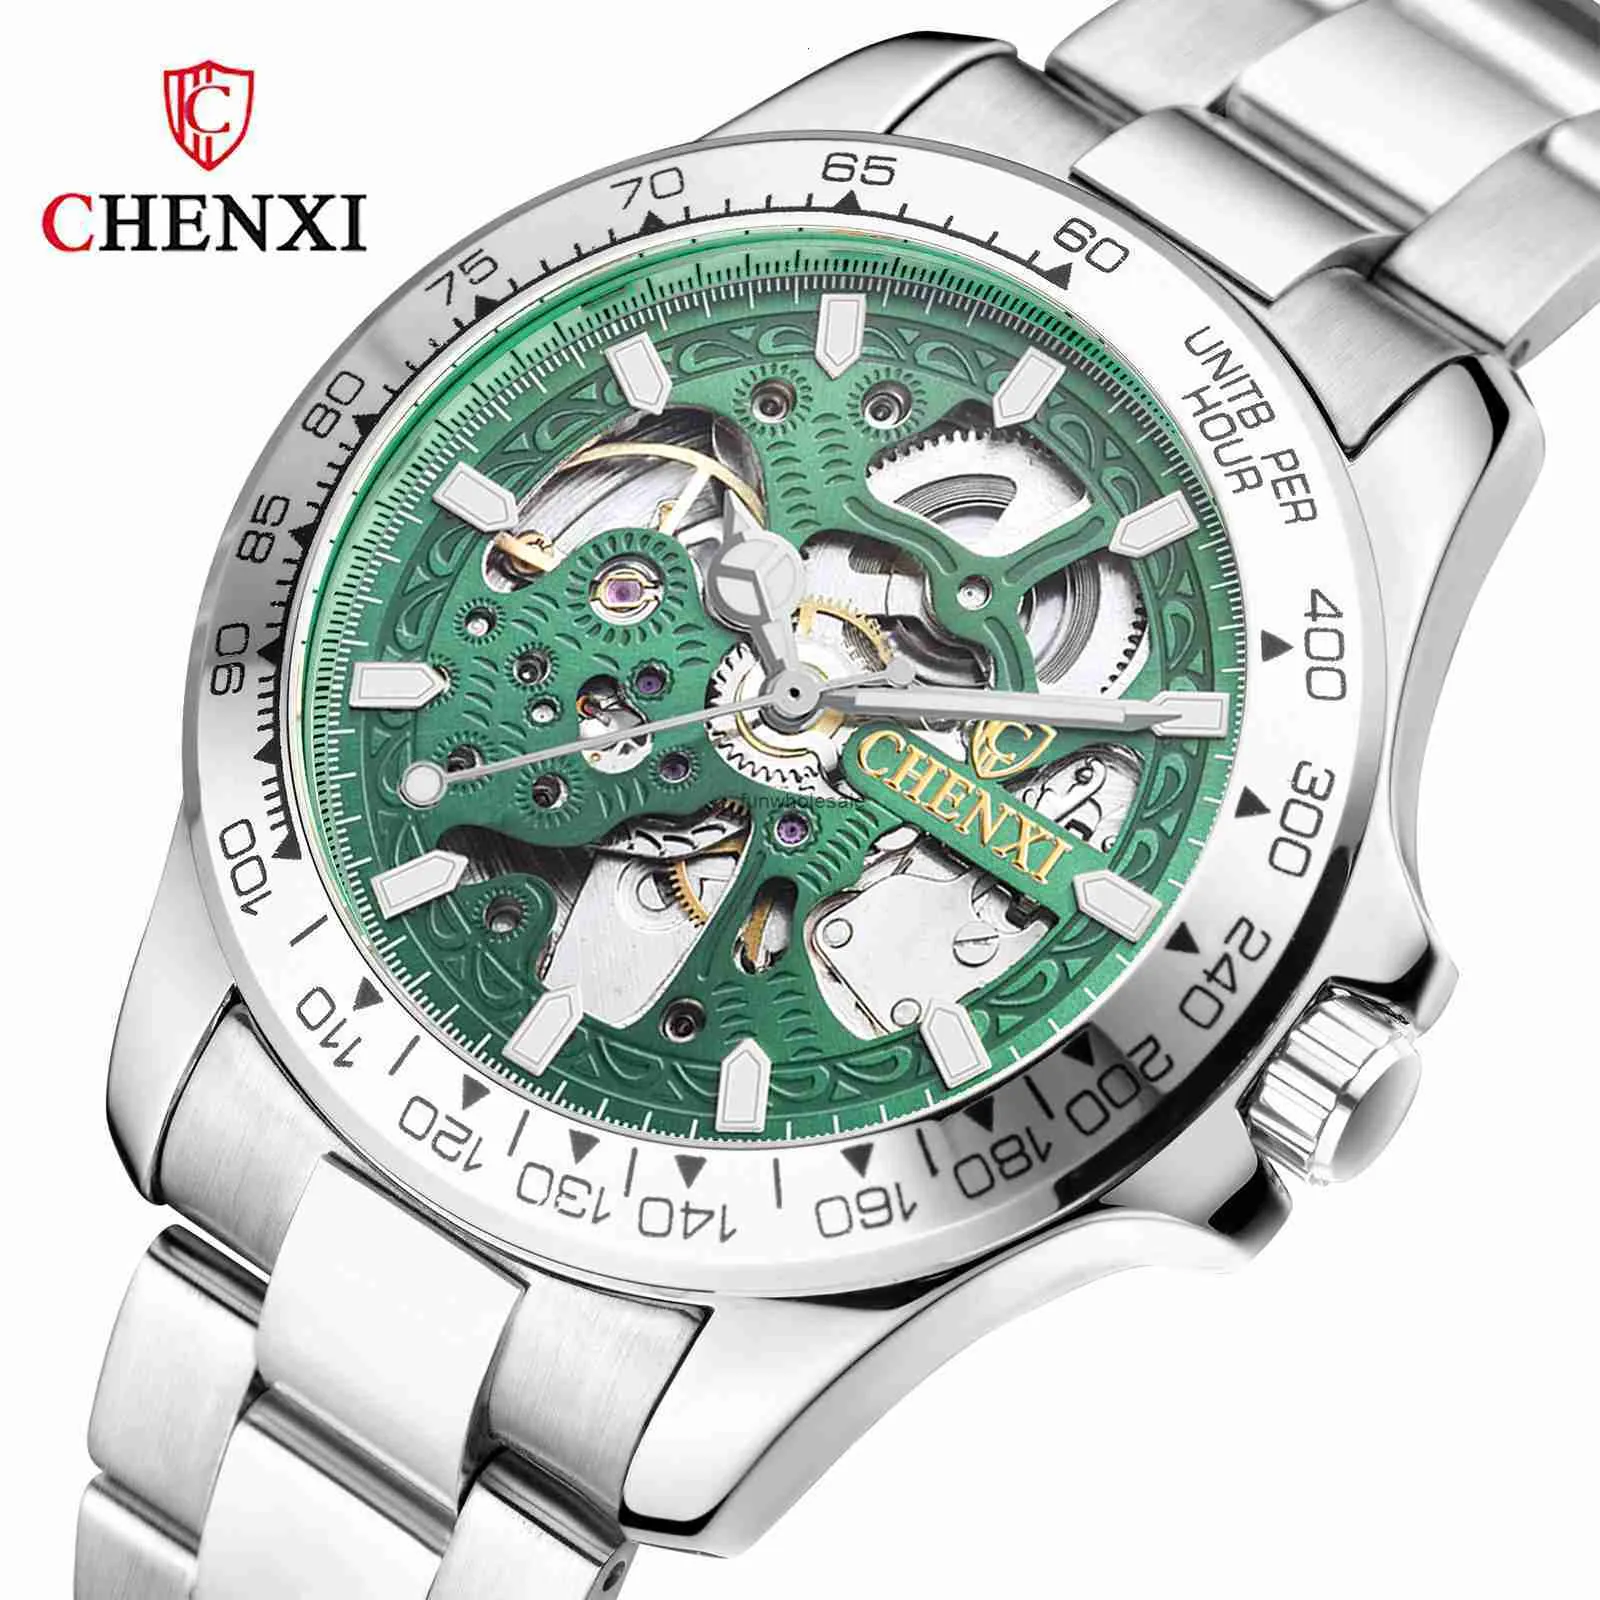 Chenxi Dawn Hollow W pełni automatyczny zegarek mechaniczny Modna wodna noc Glow Waterproof Waterproof Męs Stal Zegarek mechaniczny